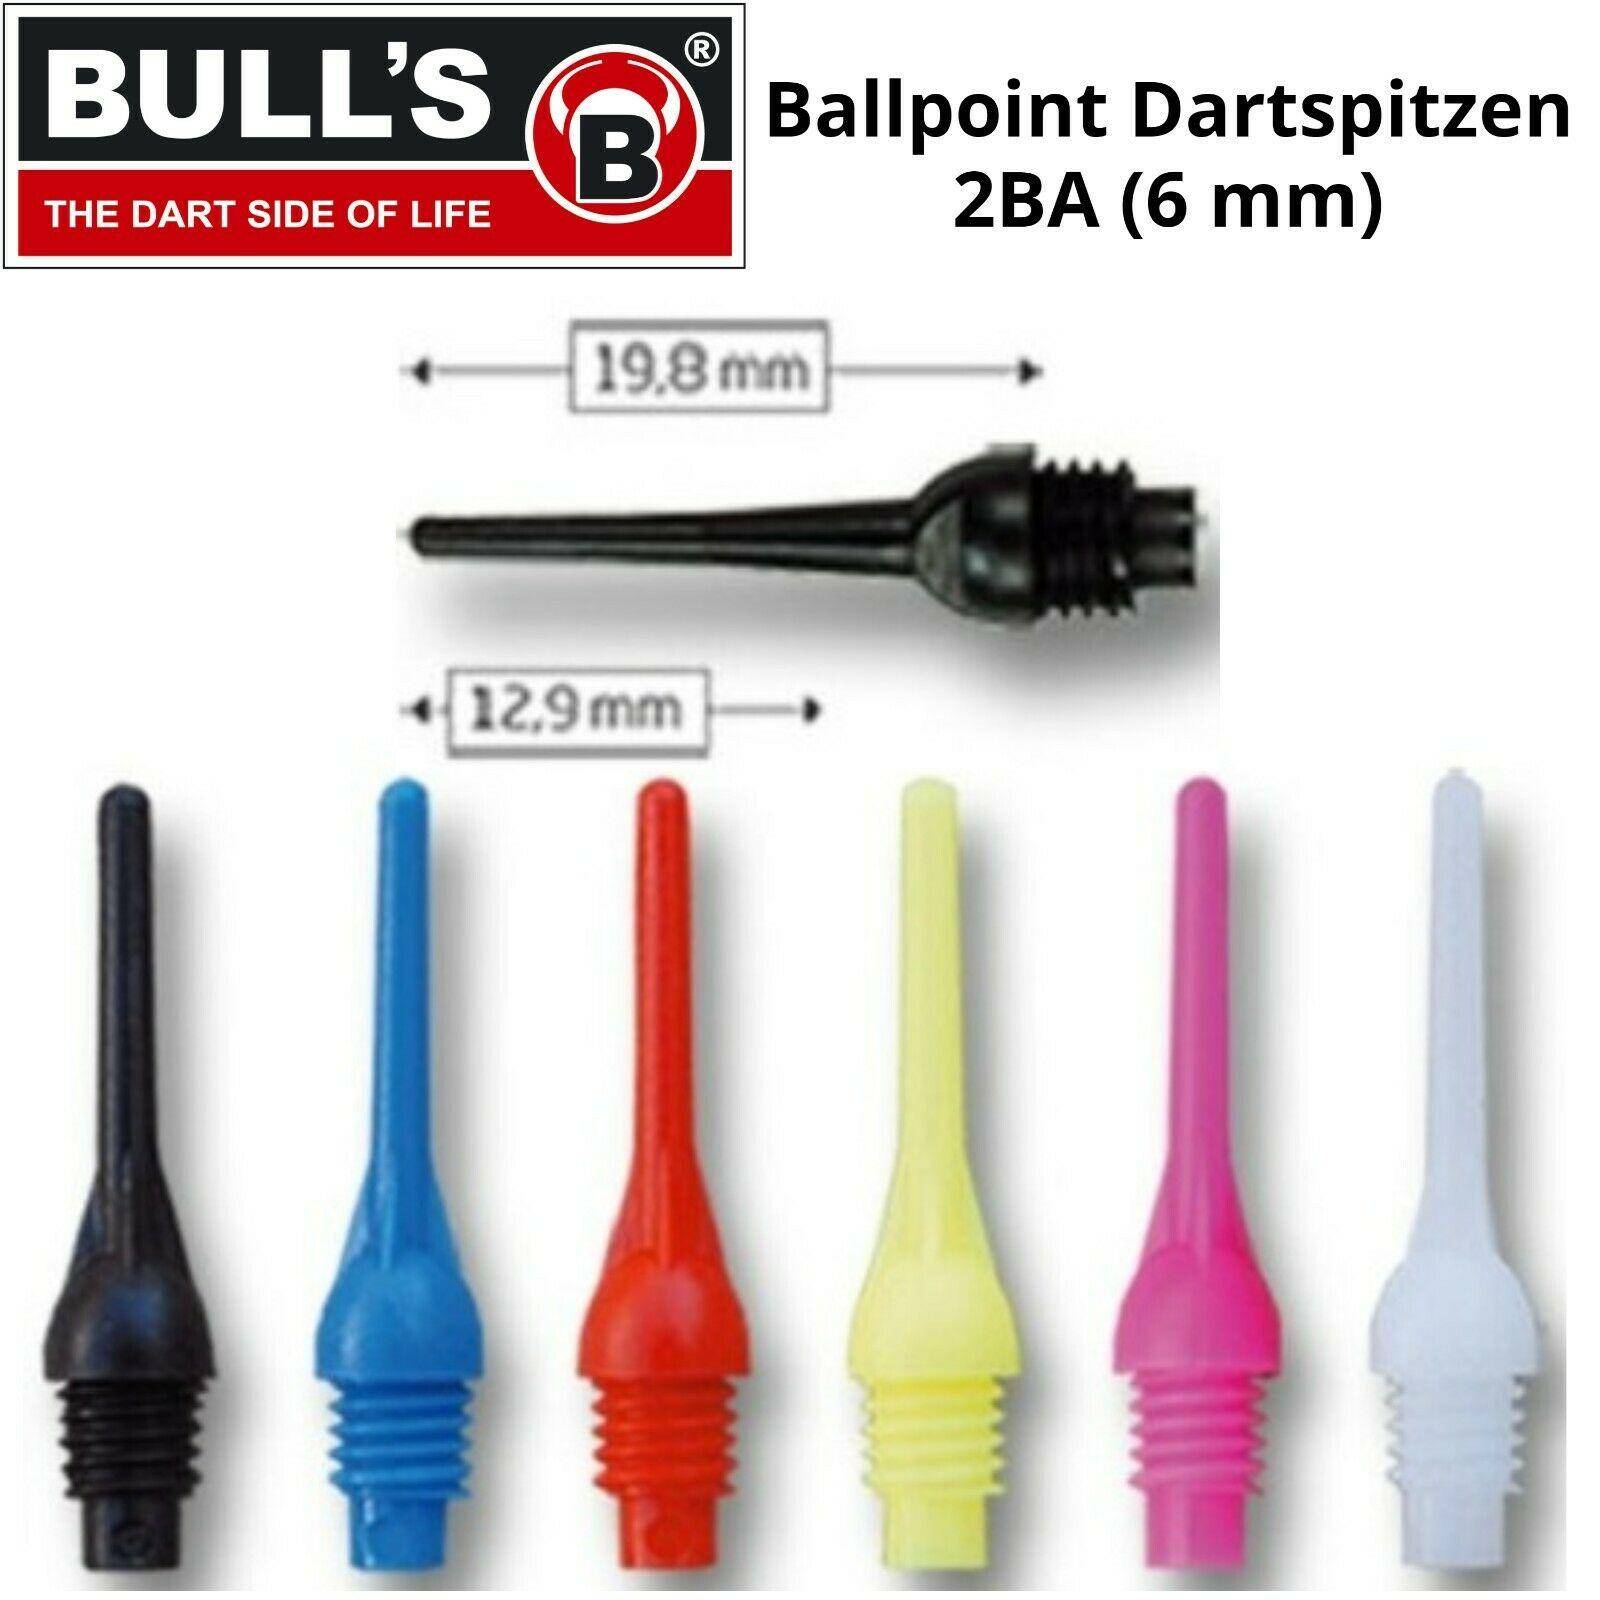 Bulls BALLPOINT Dartspitzen 2BA Soft Tip Points - 100 Stück